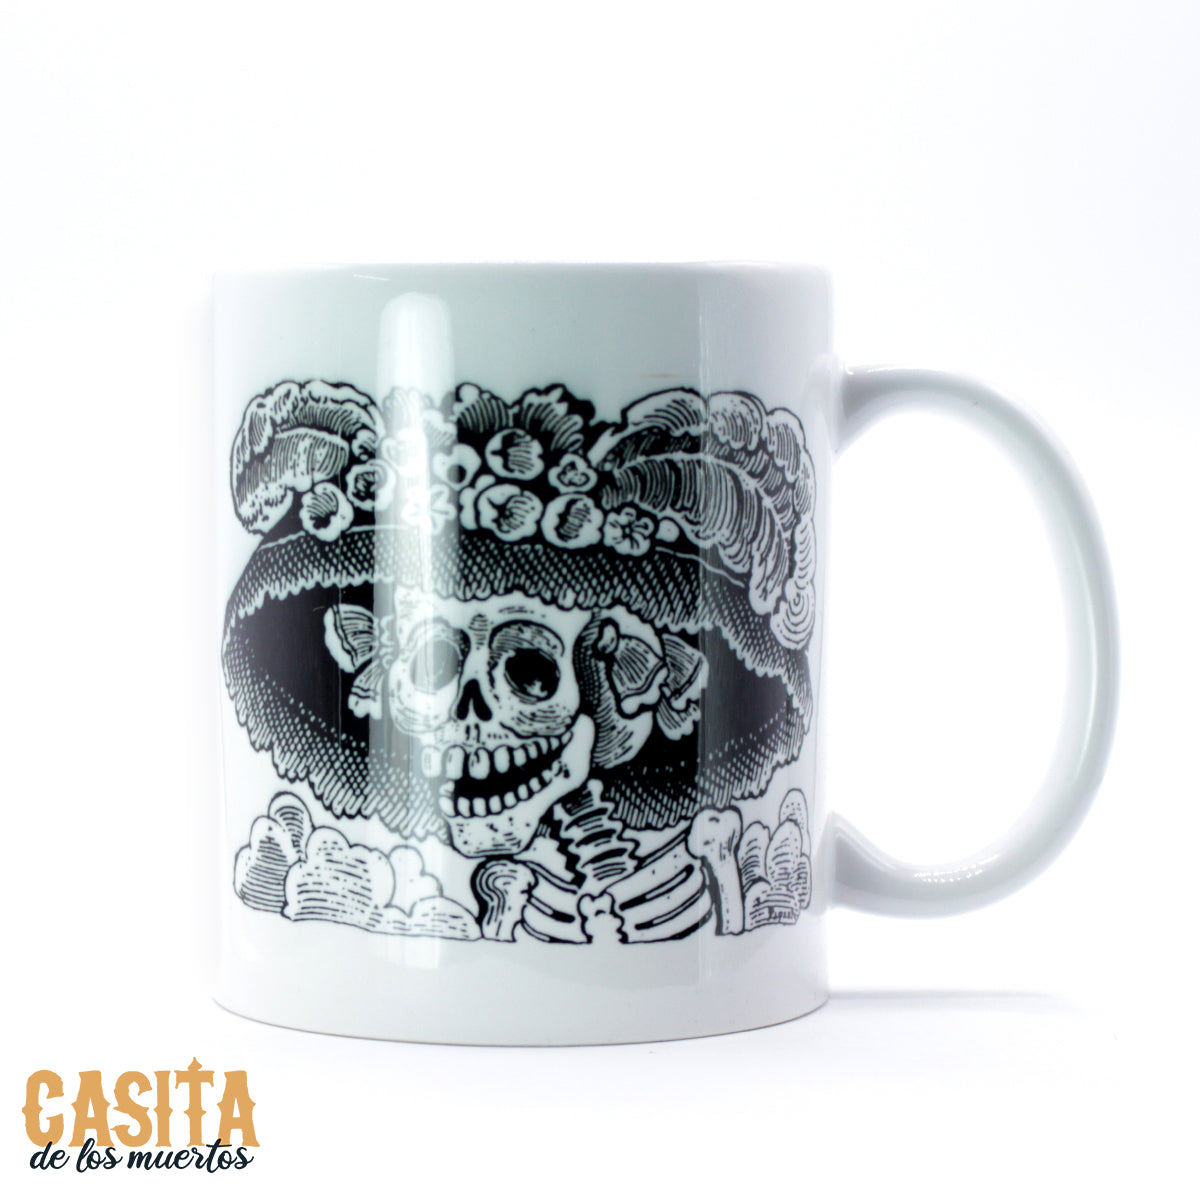 https://casitadelosmuertos.com/cdn/shop/products/Catrina-Mug-p1.jpg?v=1646870019&width=1445